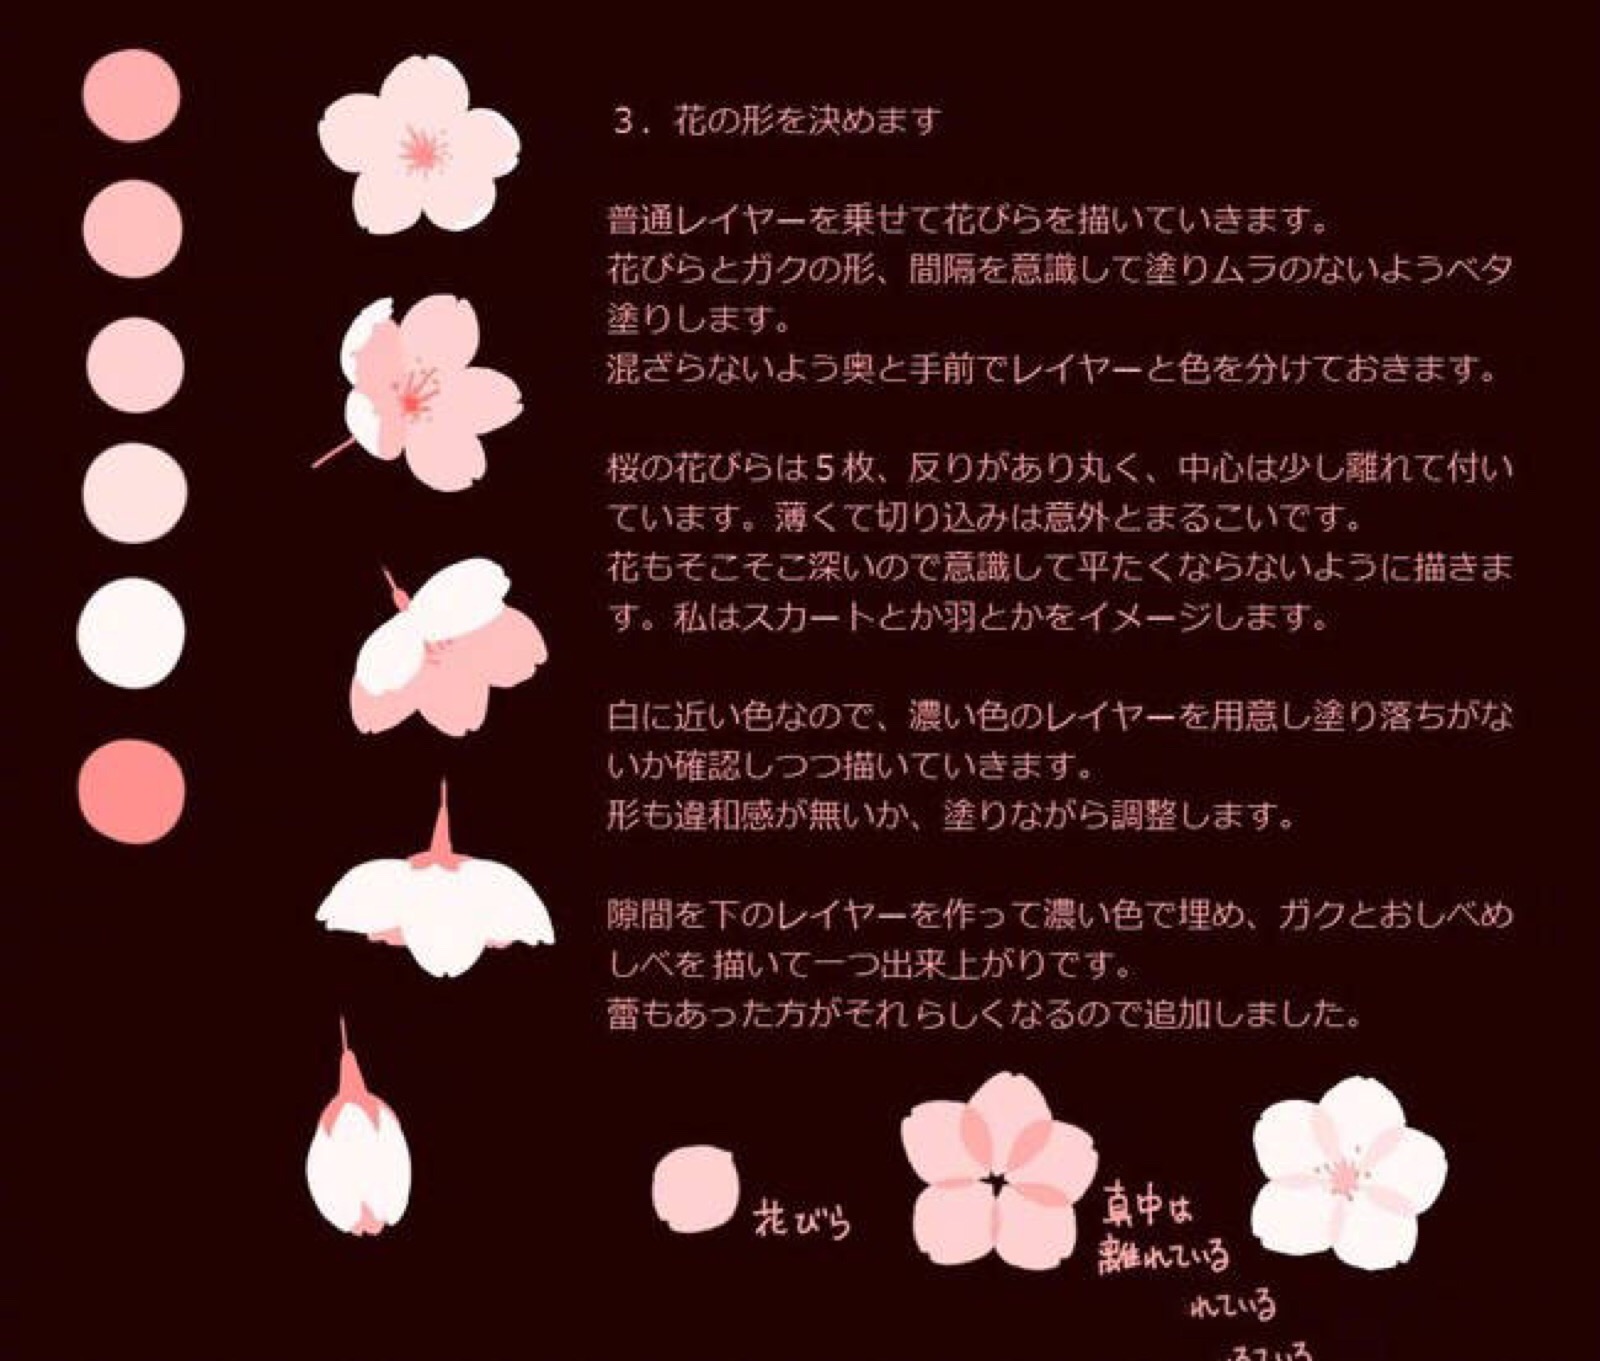 水粉画樱花教程图片